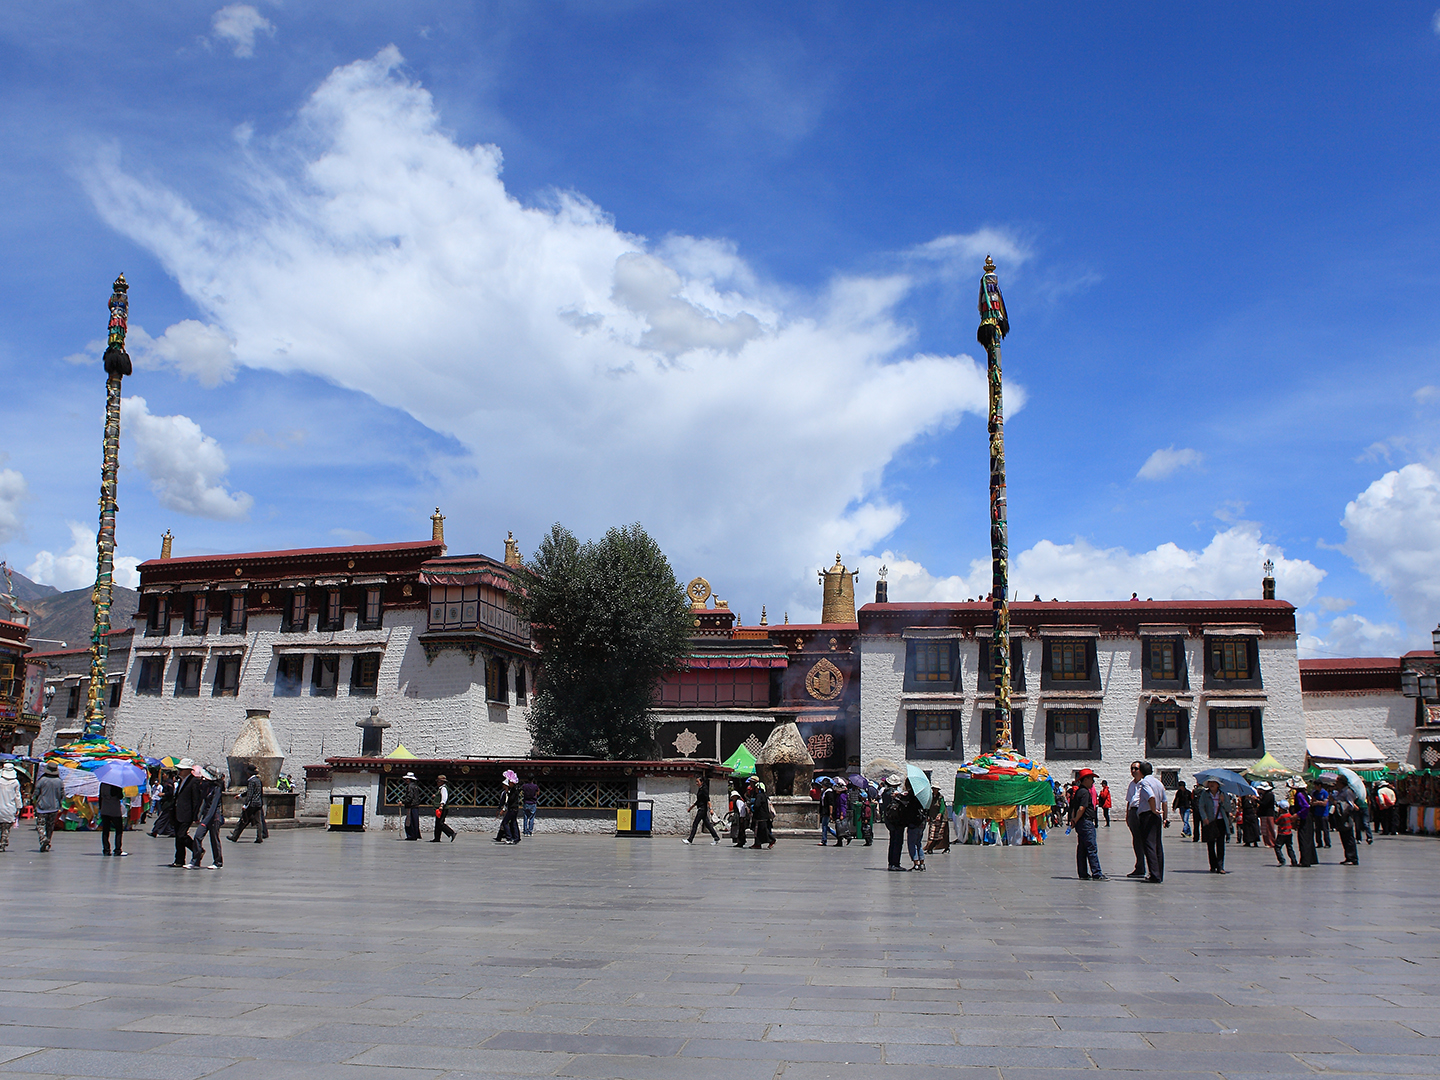 雅鲁藏布江畔的十里花溪-拉萨林芝两地 5晚6天_八大洲旅游